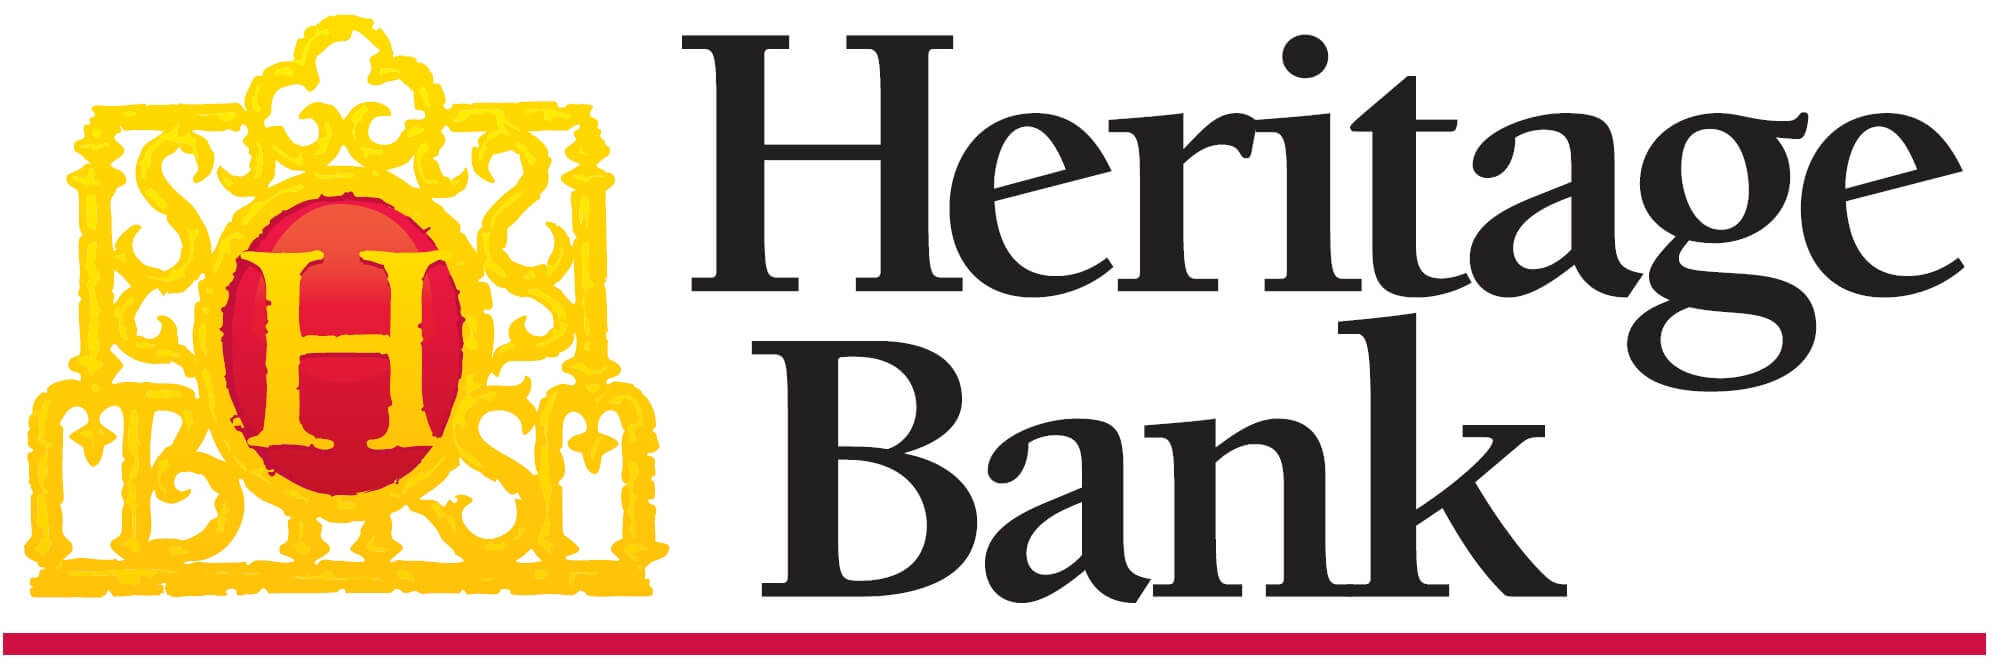 Heritage Bank_logo_c (1).jpg